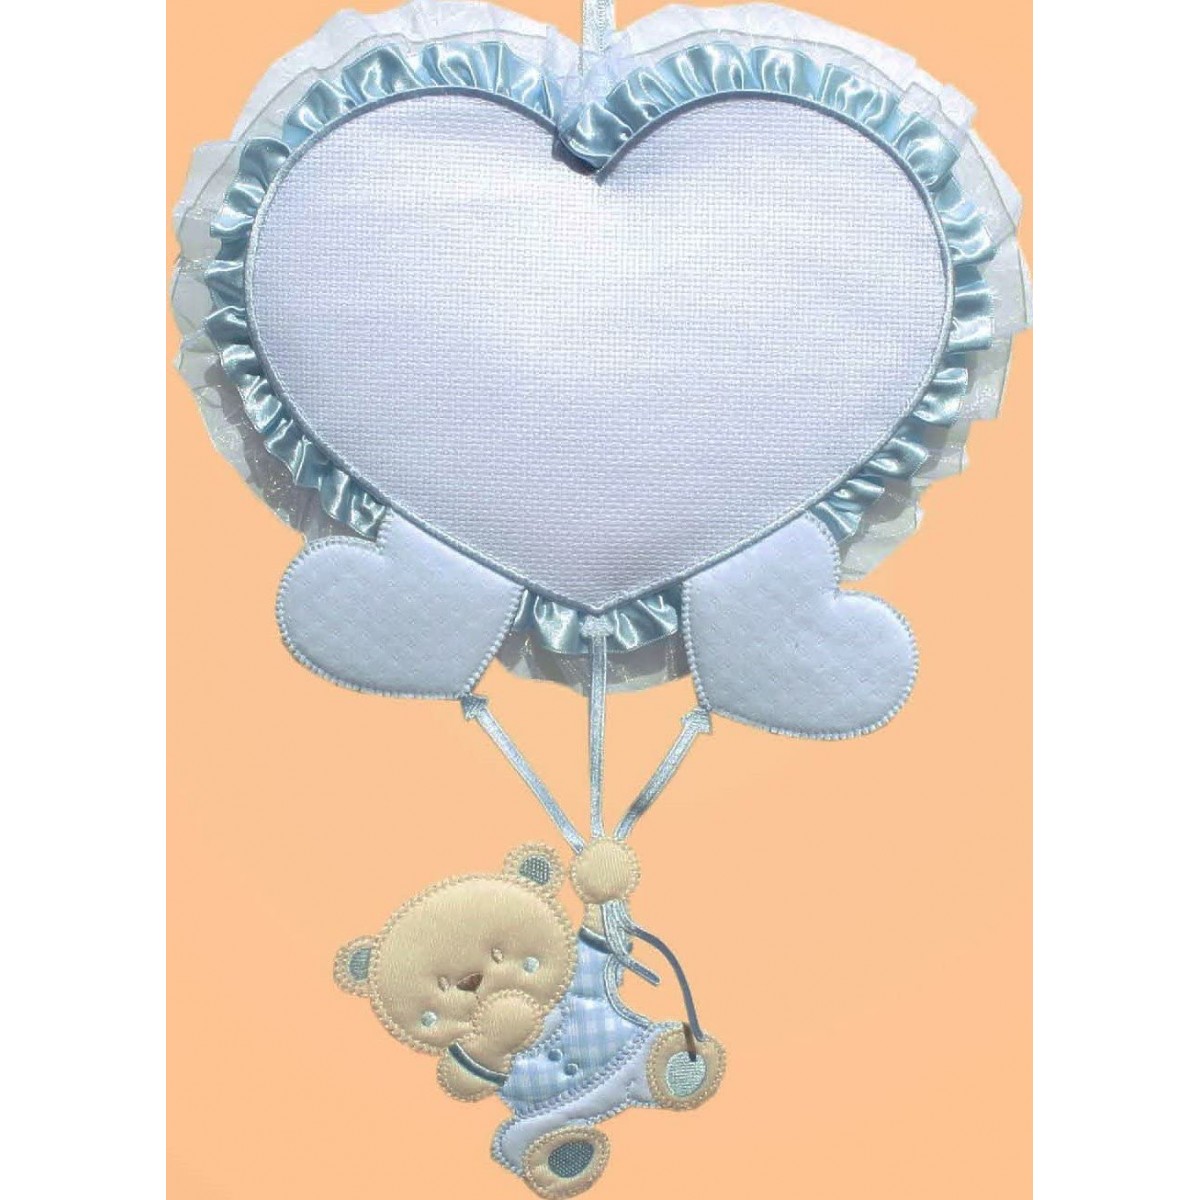 Fiocco nascita azzurro, palloncino cuore da 29 x 23 cm, con dolce orsetto